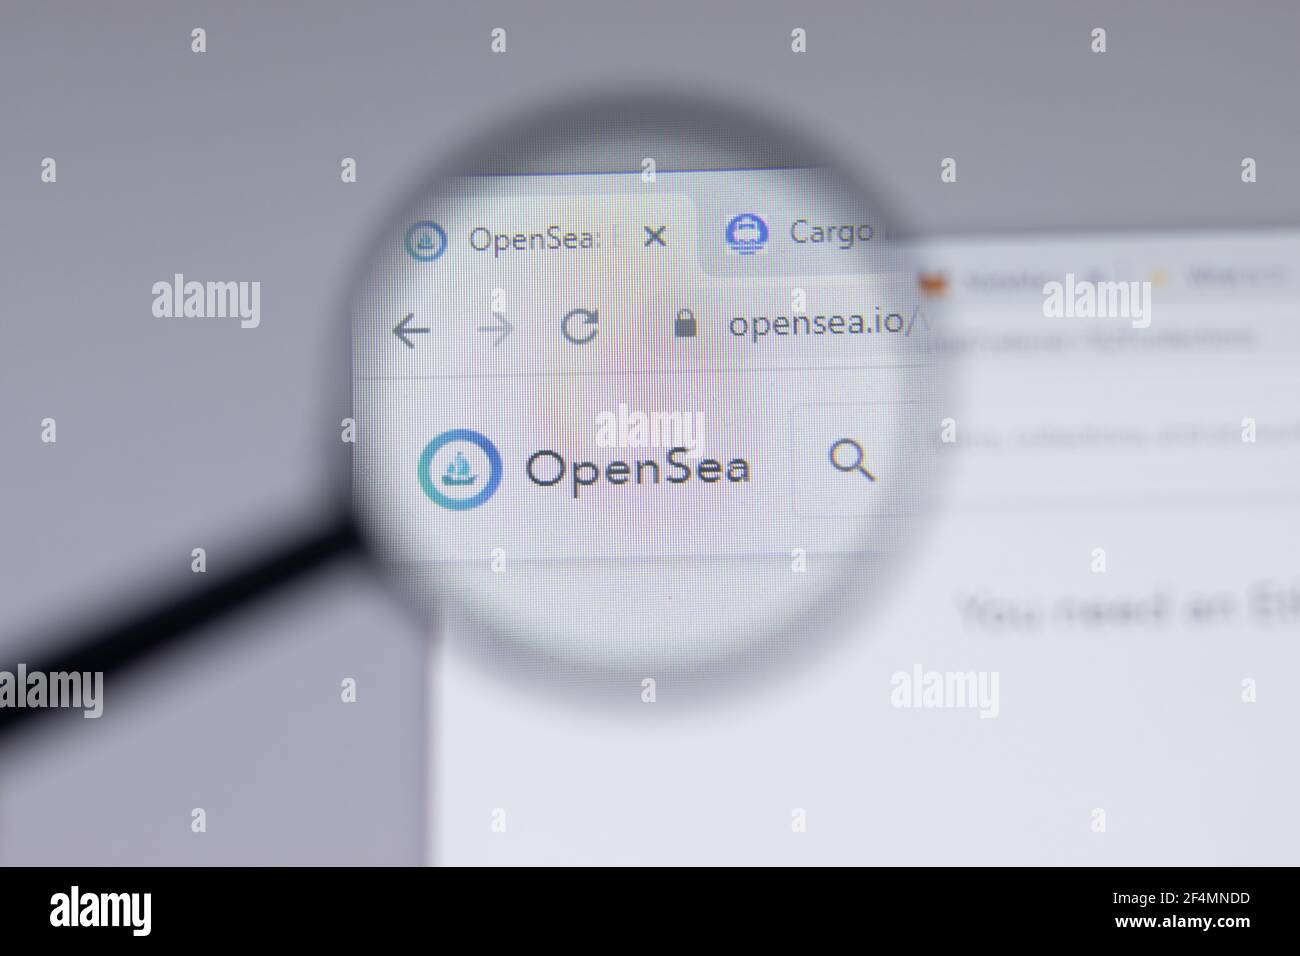 Io opensea OpenSea